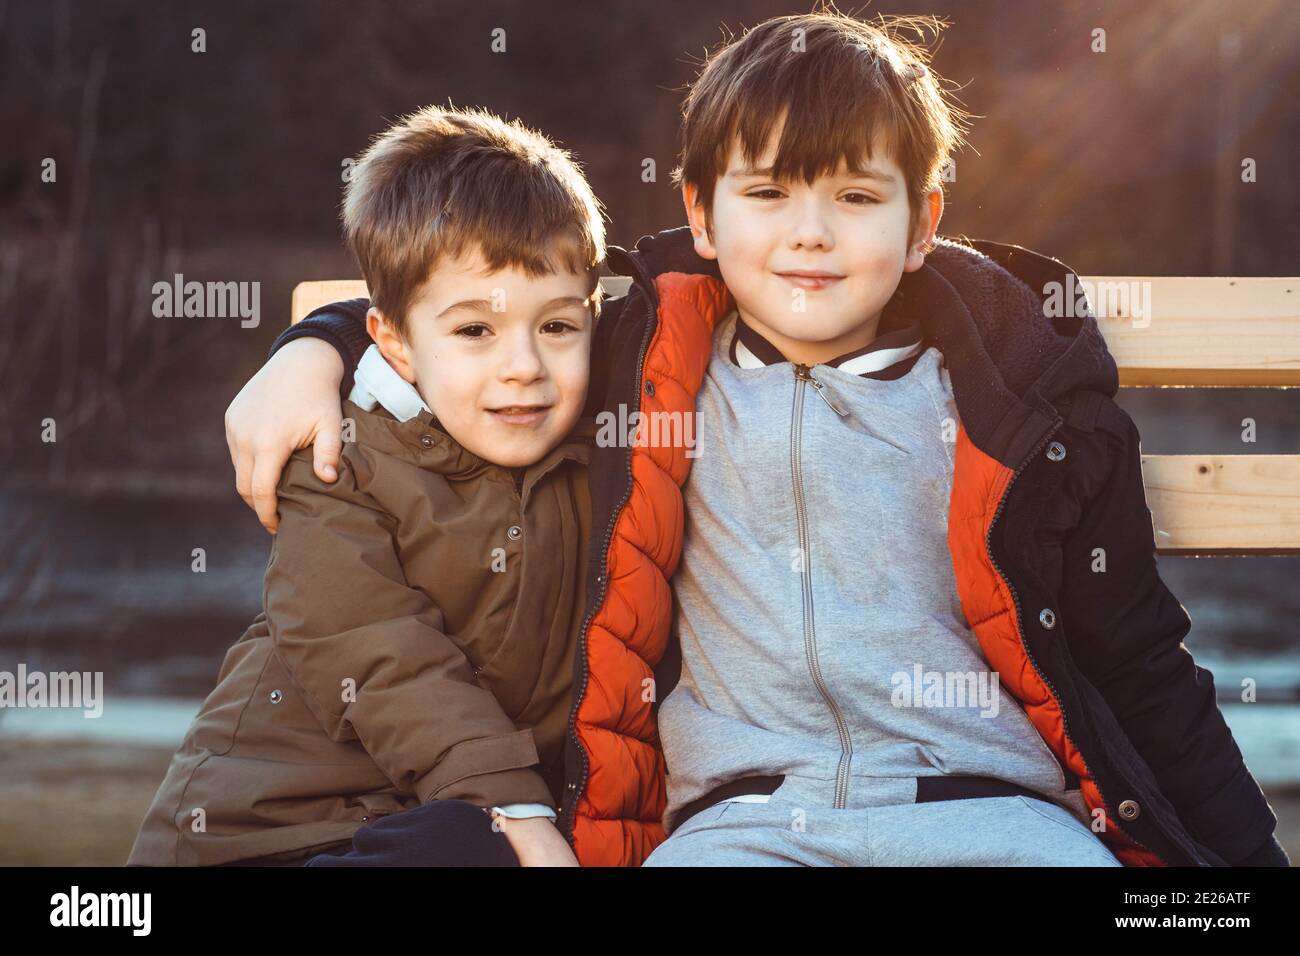 Deux petits garçons, frères, assis sur un banc, affectueux l'un avec l'autre. Banque D'Images